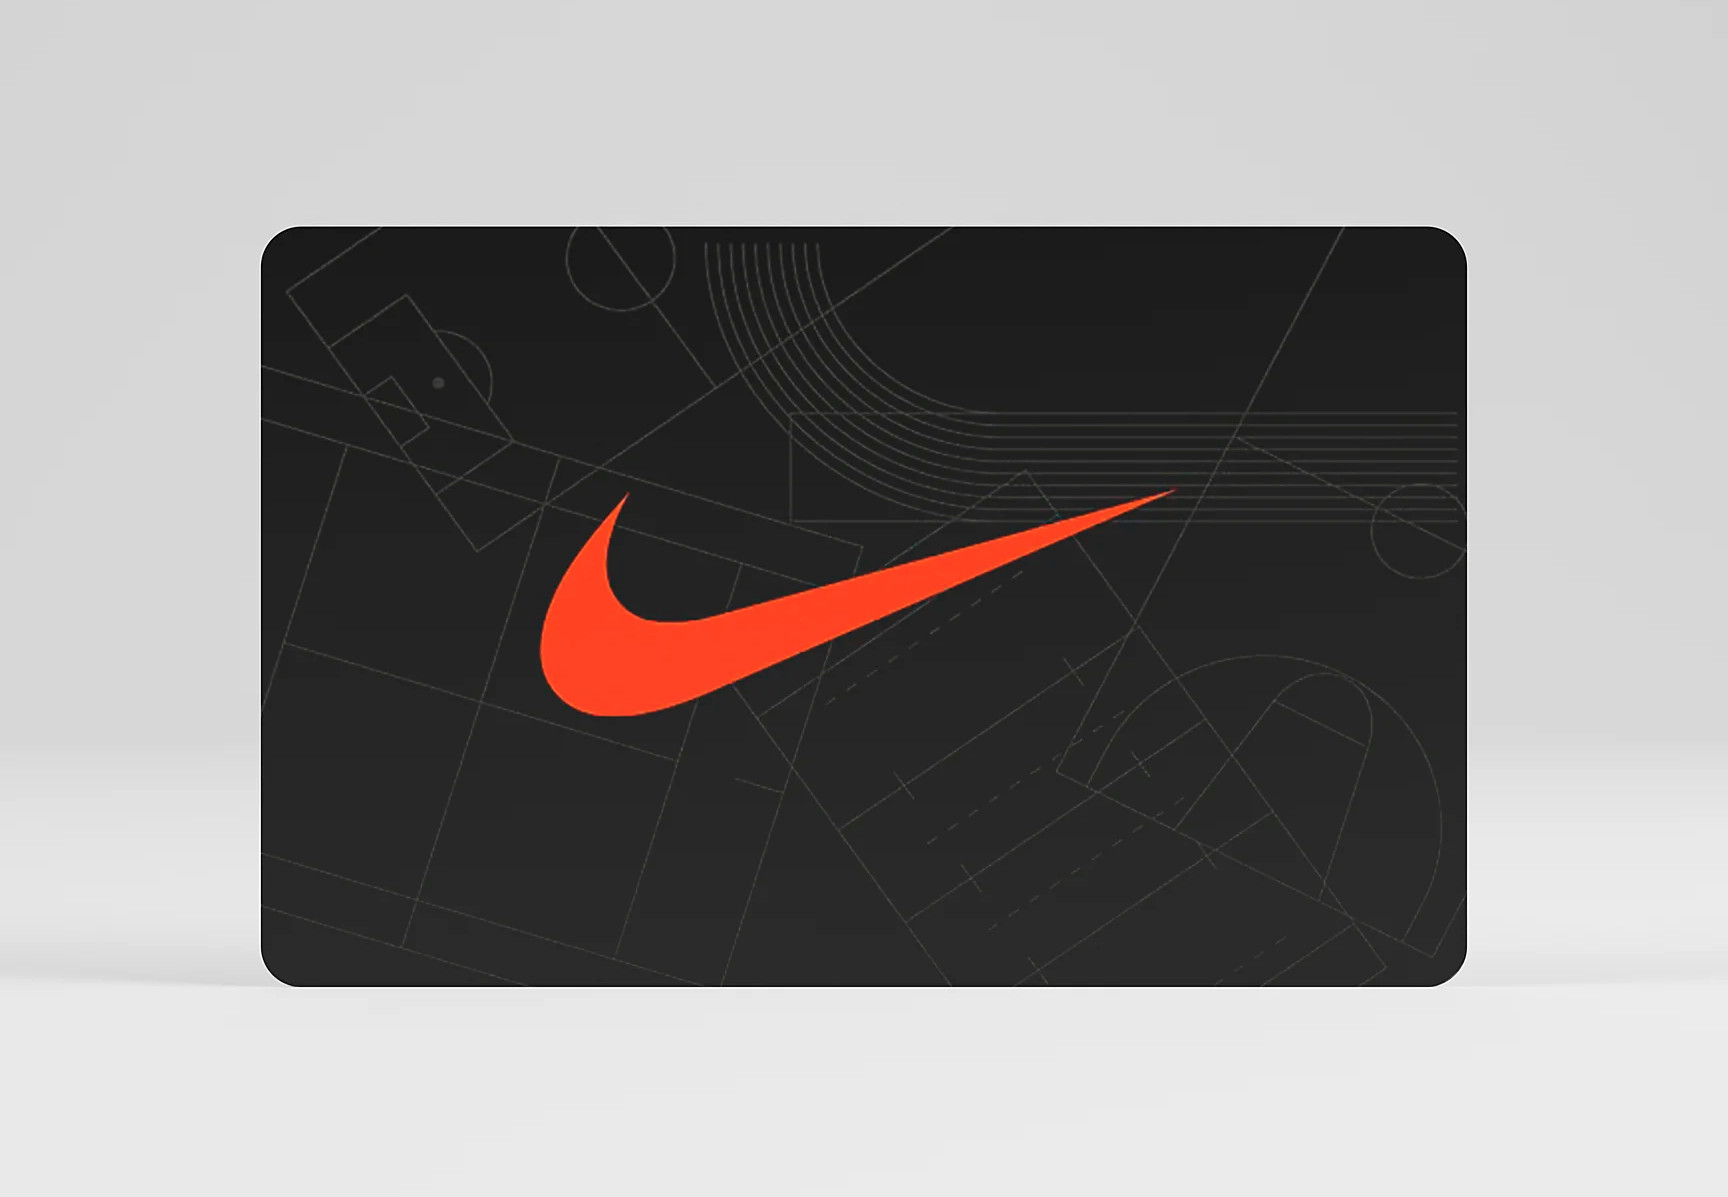 Nike £200 Gift Card UK